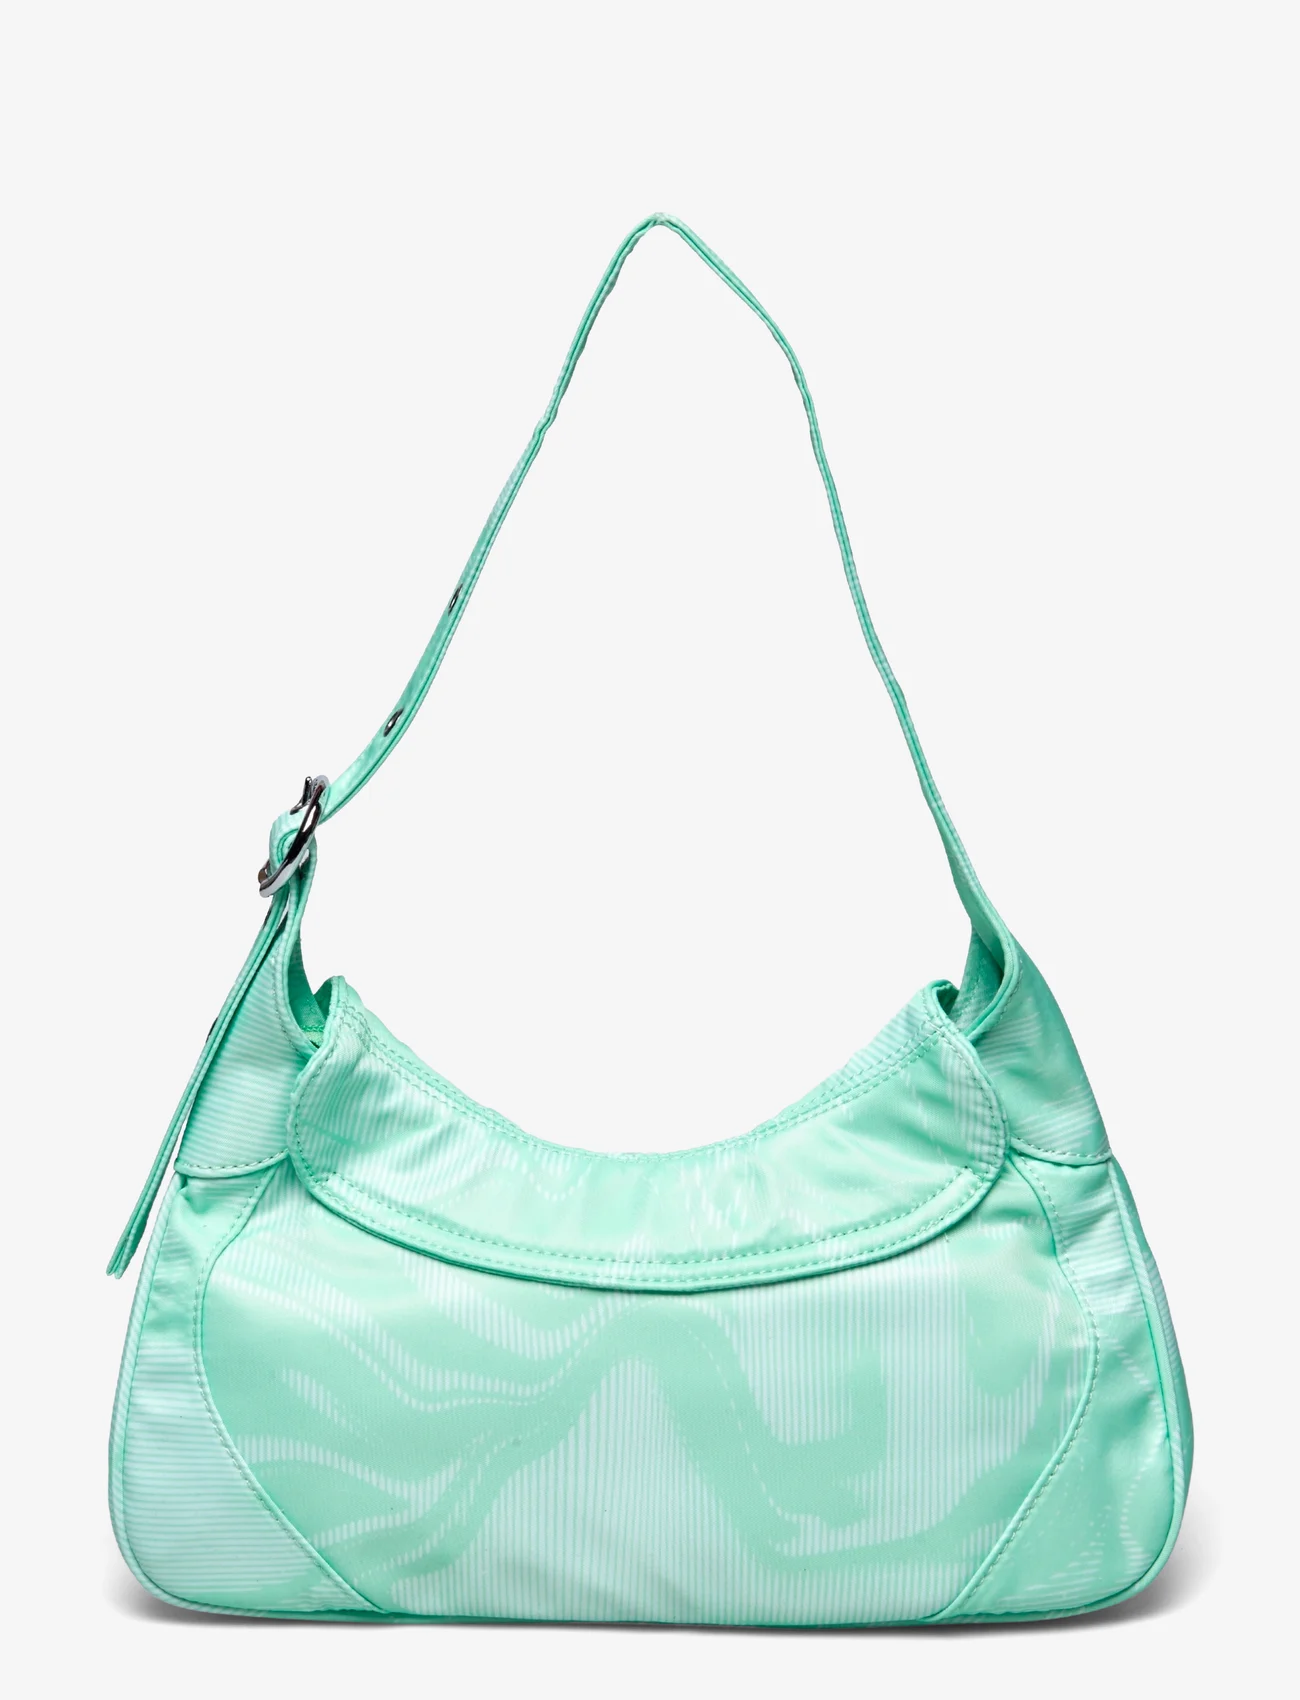 Silfen - Shoulder Bag Thea Buckle - feestelijke kleding voor outlet-prijzen - screen imitation - 1